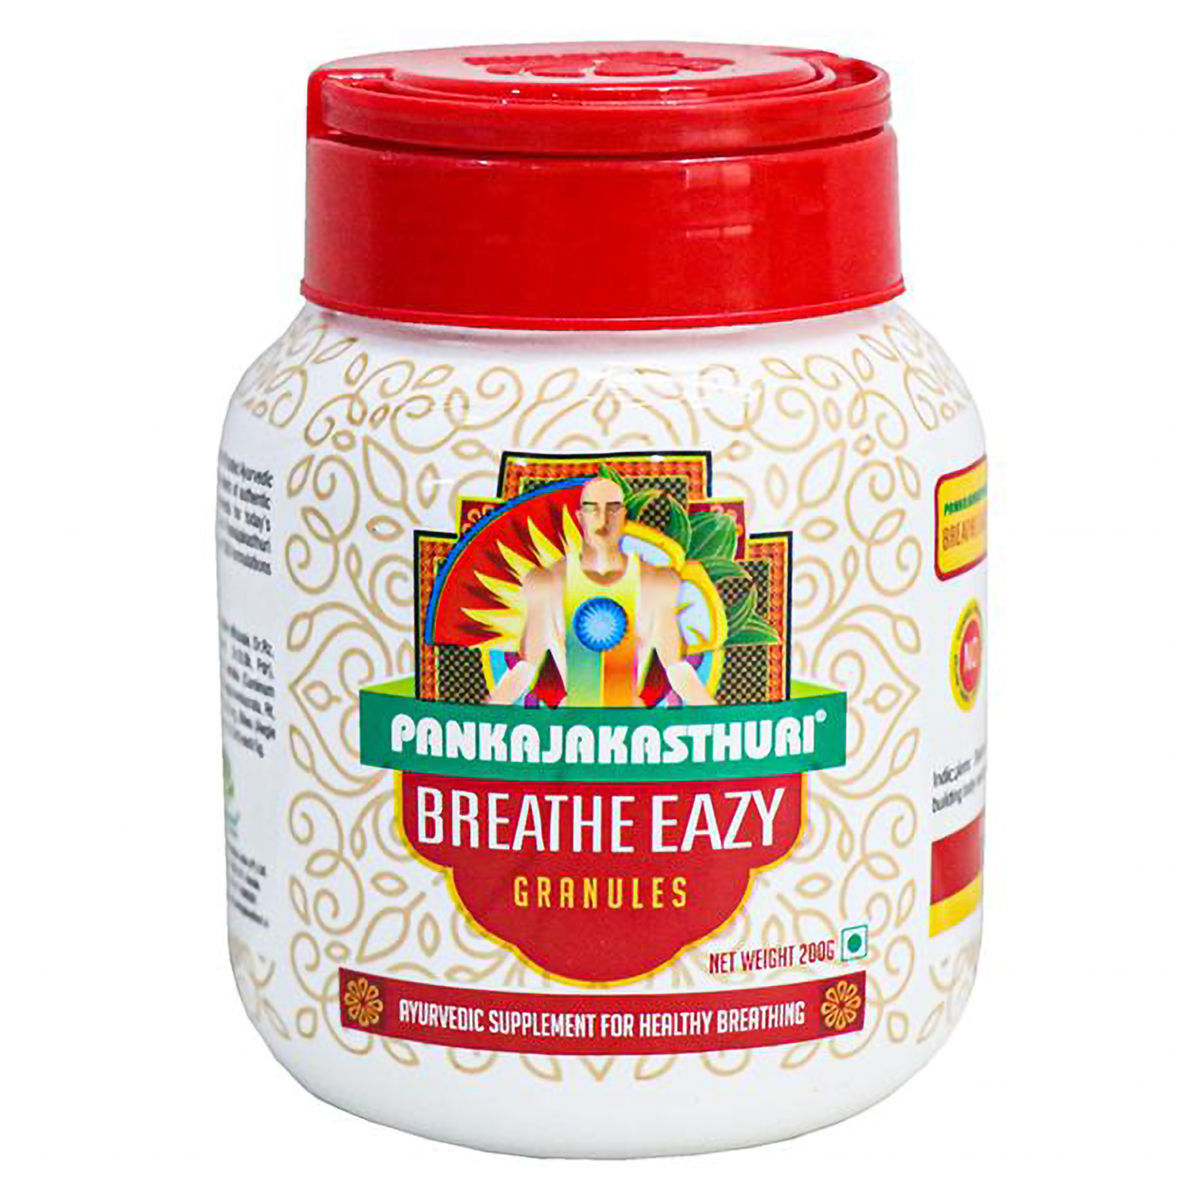 Buy Pankajakasthuri Breathe Easy Garnules, 200 gm Online